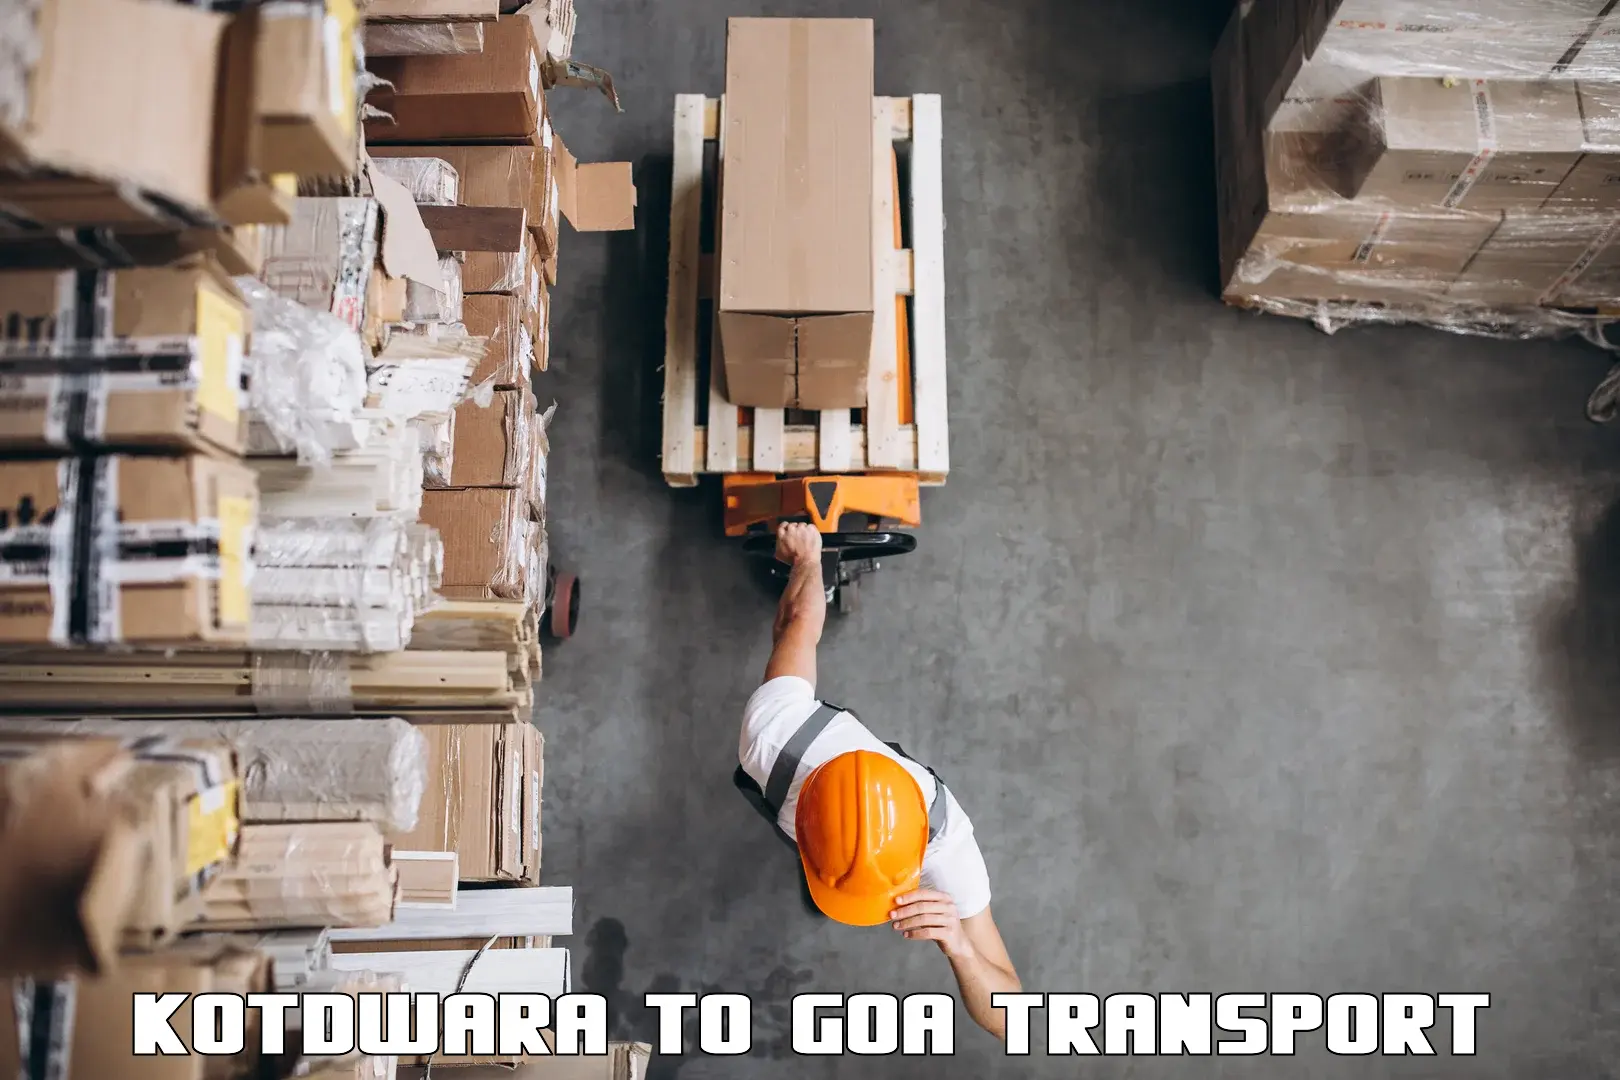 Furniture transport service Kotdwara to IIT Goa